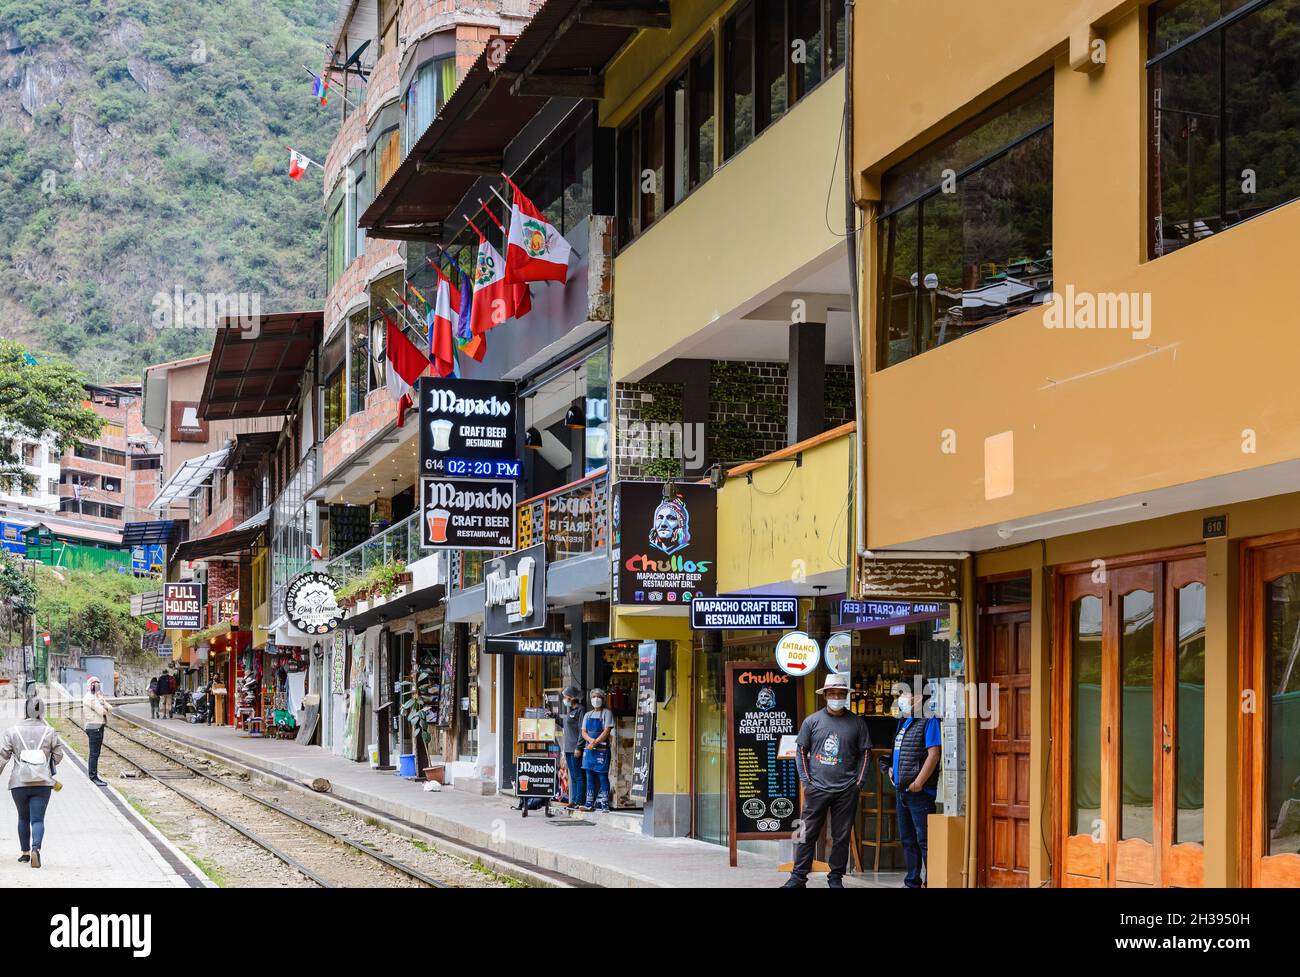 Belebte Straße der kleinen Stadt Aguas Calientes, das Tor zu Machu Picchu. Cuzco, Peru. Stockfoto